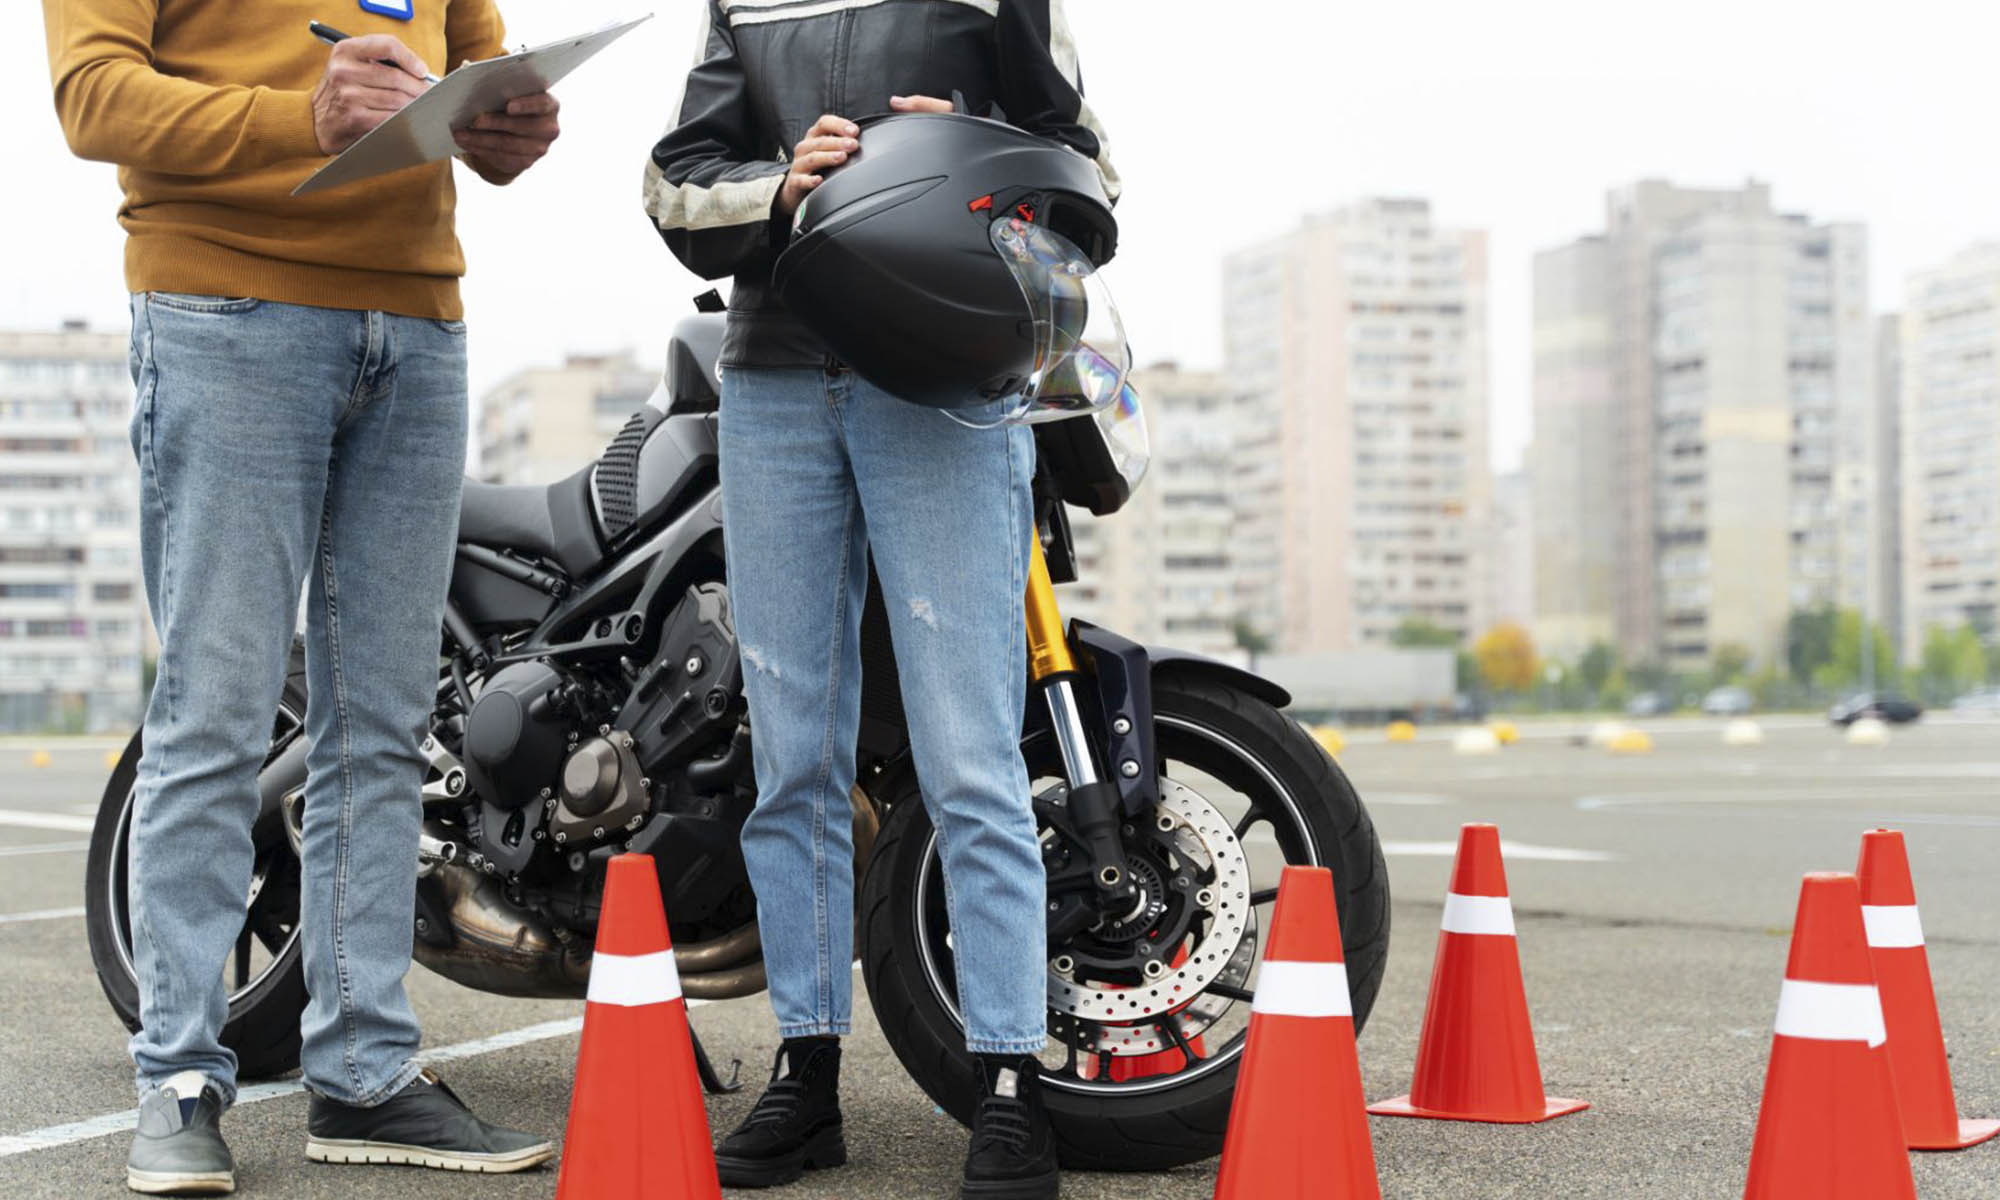 La Dirección General de Tráfico está desarrollando nuevas regulaciones para conducir motocicletas de 125 cc.